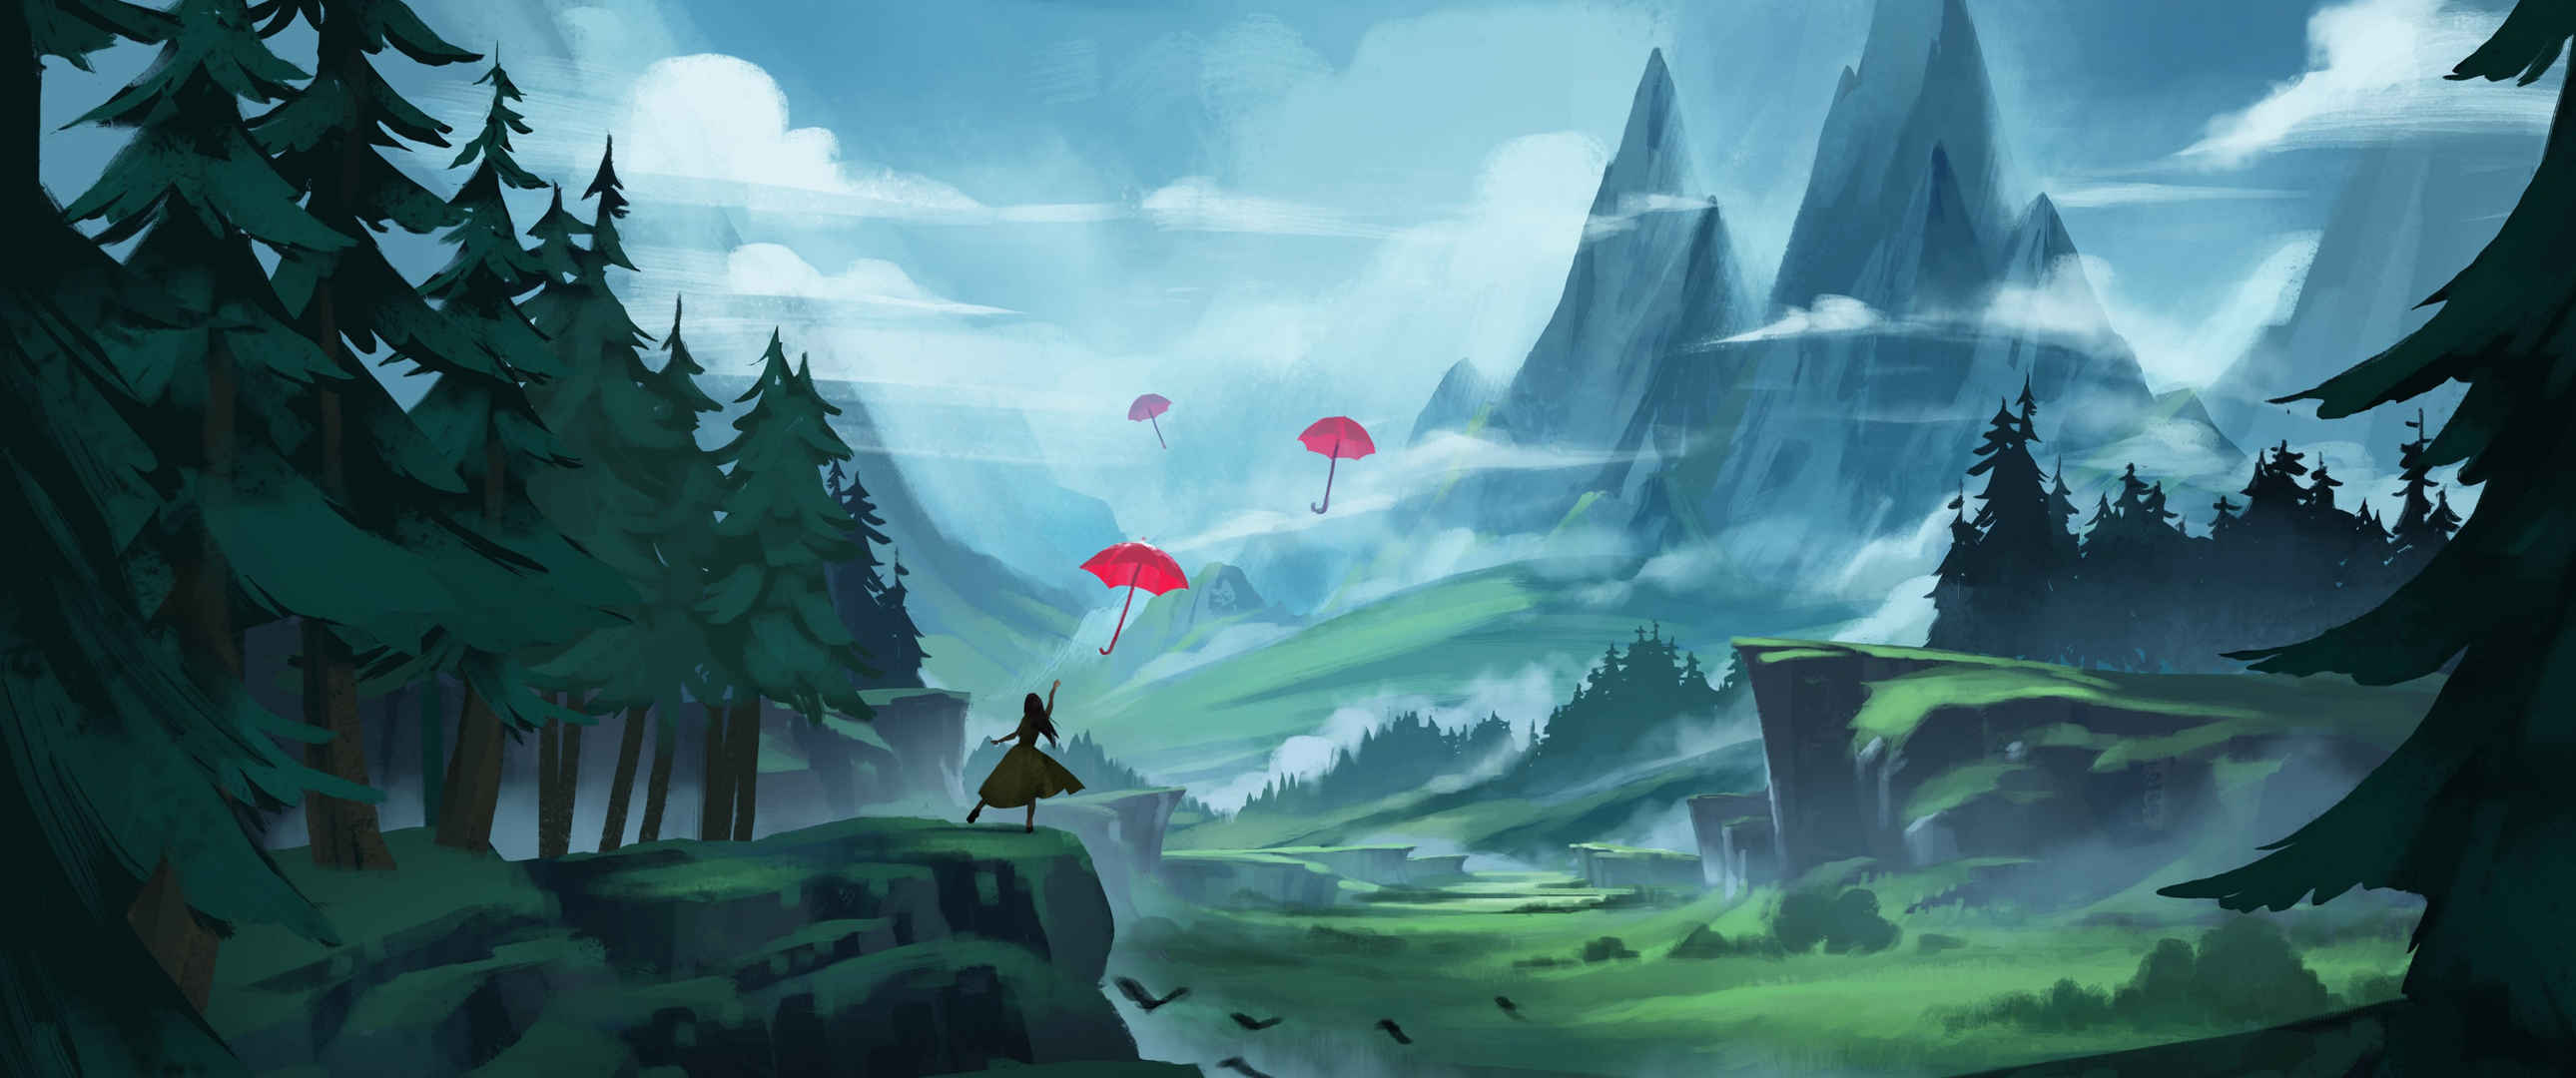 女人 雨伞 插画 风景 山脉 森林 3440x1440壁纸-